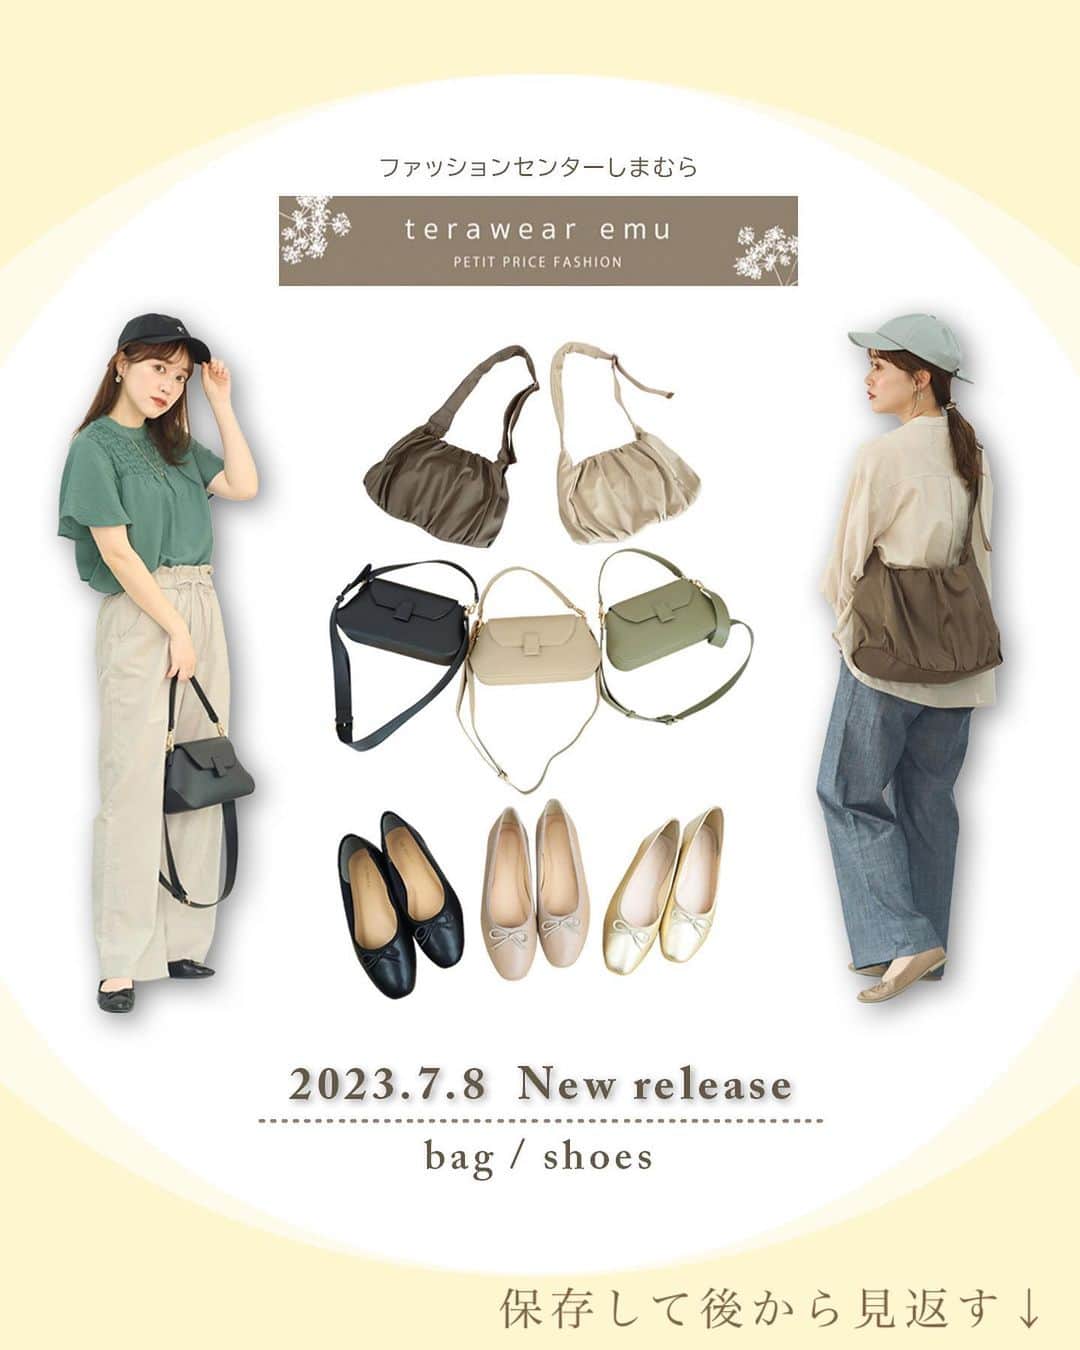 てらのインスタグラム：「【7/8(土)発売♡emu新作bag、shoes】  いつも見てくださり ありがとうございます☺️💕  @grshimamura にて展開中の 私のプロデュースブランド terawear emuから 新作のお知らせです🎁♡  こちらの投稿では、 バッグと靴をご紹介します！  まずバッグは2型✨ 使い勝手の良いシンプルさが魅力の 2WAYバッグは、 いろんなシーンで使うことを考えました👜✨ 取り外し可能な付属のショルダーベルトで 肩掛け・斜め掛けも可能です💕  ふんわりギャザーのバッグは カジュアルな素材で可愛らしいデザイン💕 とっても軽くて程よい大きさなので デイリー使いにぴったり👜 太めのショルダー紐なので 肩に負担がかかりにくいのもこだわり✨  どちらも年中お使いいただけるバッグなので、 ぜひチェックしてみてください✨  そしてこだわりのバレエシューズ🩰 今までいろんな靴をプロデュースしてきましたが、 ここへ来てシンプルに 「履き心地が神で毎日履きたくなるバレエシューズ欲しいな👼」 と思い立ち、作りました！✨  個人的にバレエシューズが大好きで たくさん履いてきたからこそ、追求できた履き心地です✨  ぜひ履いてみて欲しいです🥺🌈🌈  ………………………………………  7月8日(土)〜 しまむら全店舗にて販売開始  7月9日(日) 9:00〜 オンラインストア販売開始 ………………………………………  7月5日(水） 21:00  フィード投稿、ブログ投稿(小物)  7月6日(木） 12:00〜インスタライブ(小物) 21:00  フィード投稿、ブログ更新(アパレル) 、WEAR投稿  7月7日(金） 12:00〜インスタライブ(アパレル)  最近はこの投稿の制作に没頭していたから、 あんまりインスタライブとかできなくてごめんね🥺🙏 明日ライブでみんなに会えるの 楽しみにしてます🌈💕  #しまパト#しまむら#しまむらパトロール#しまむらコーデ#ファッションセンターしまむら#プチプラ#プチプラコーデ#ママコーデ#きっと見つかる#みんなワクワク#terawearemu#夏コーデ」